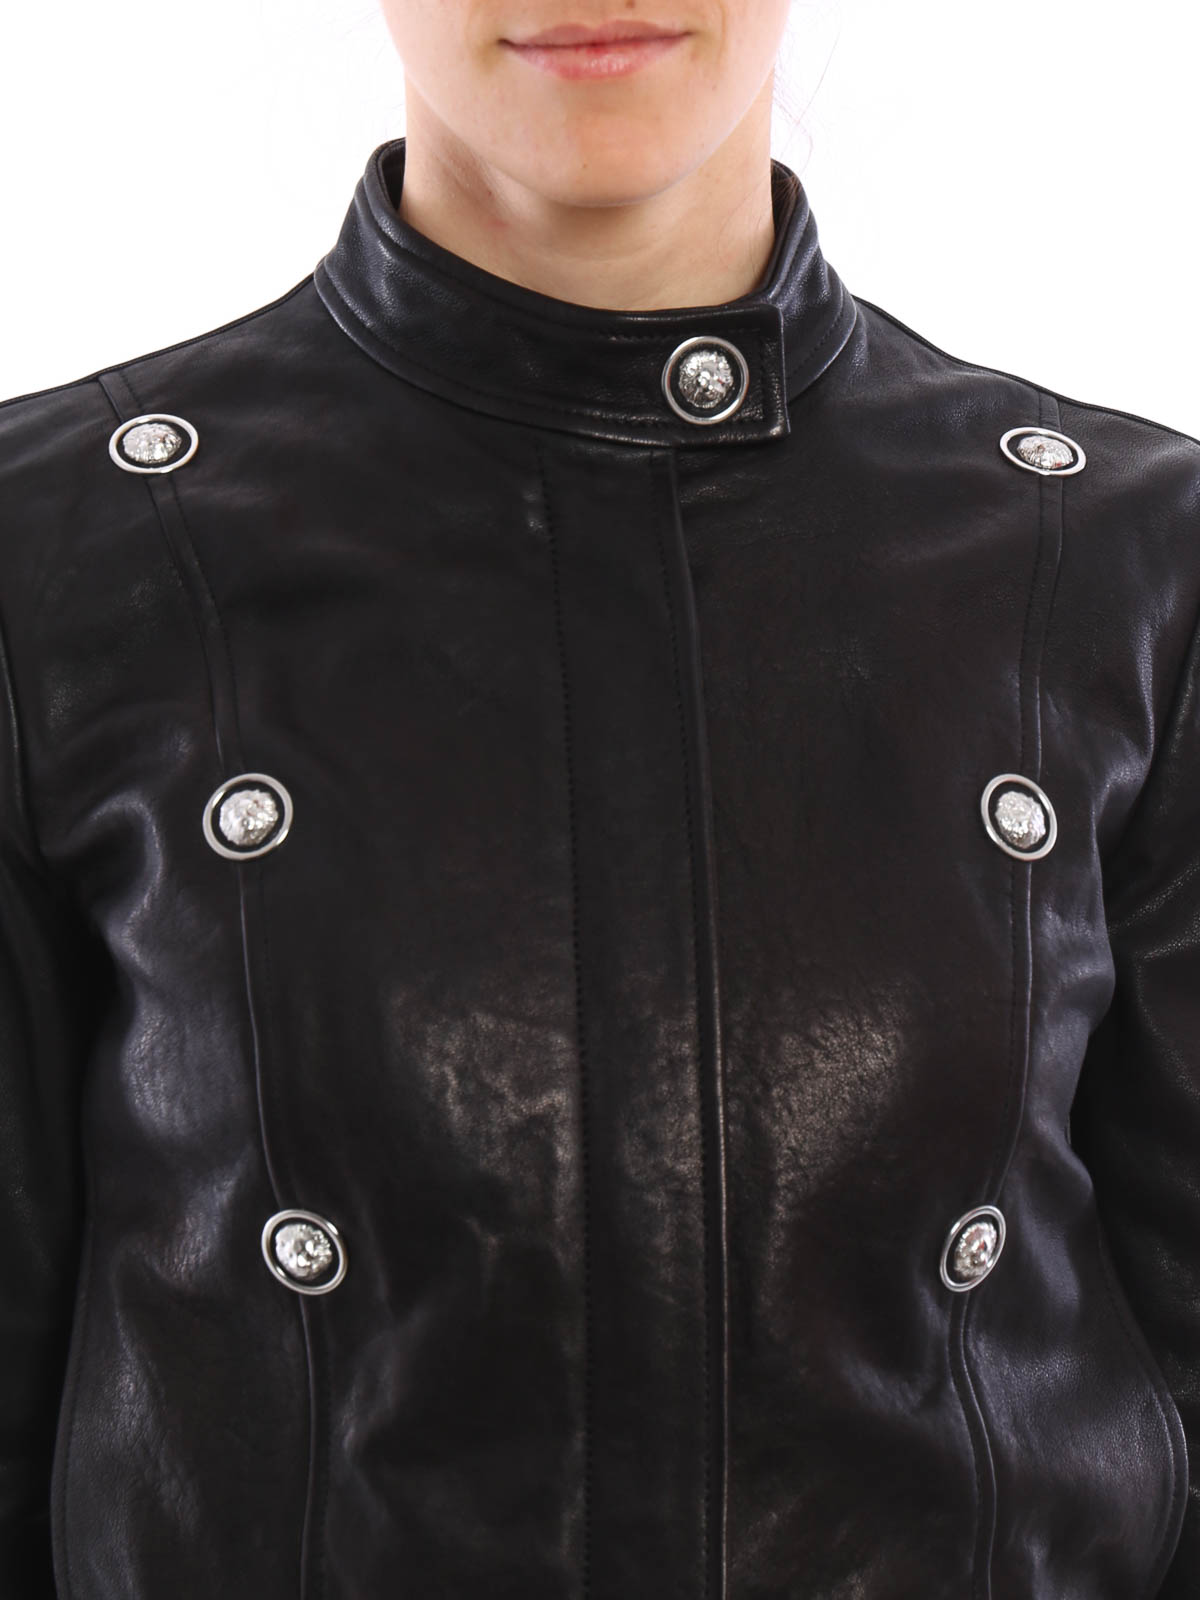 versus versace leather jacket